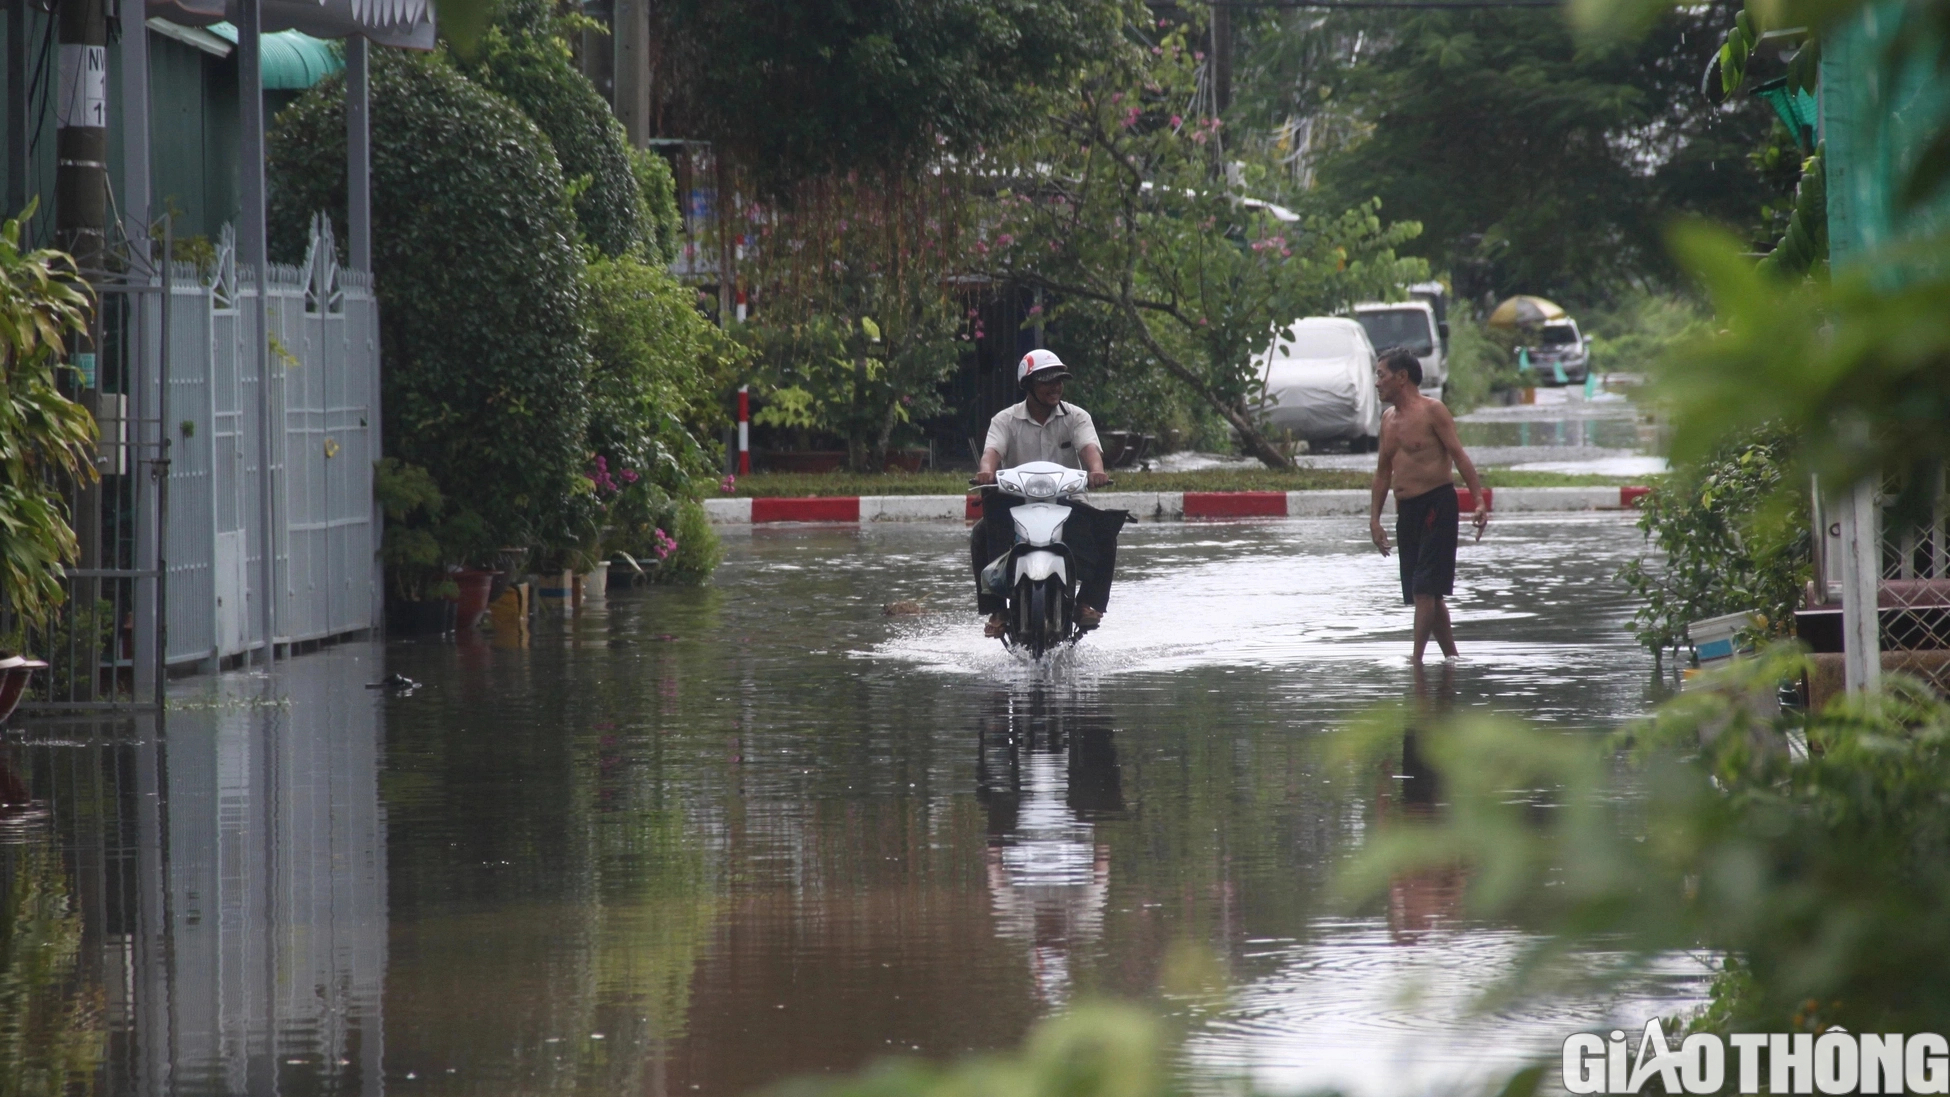 Người dân Bạc Liêu bì bõm dẫn xe lội nước sau cơn mưa lớn kéo dài - Ảnh 9.